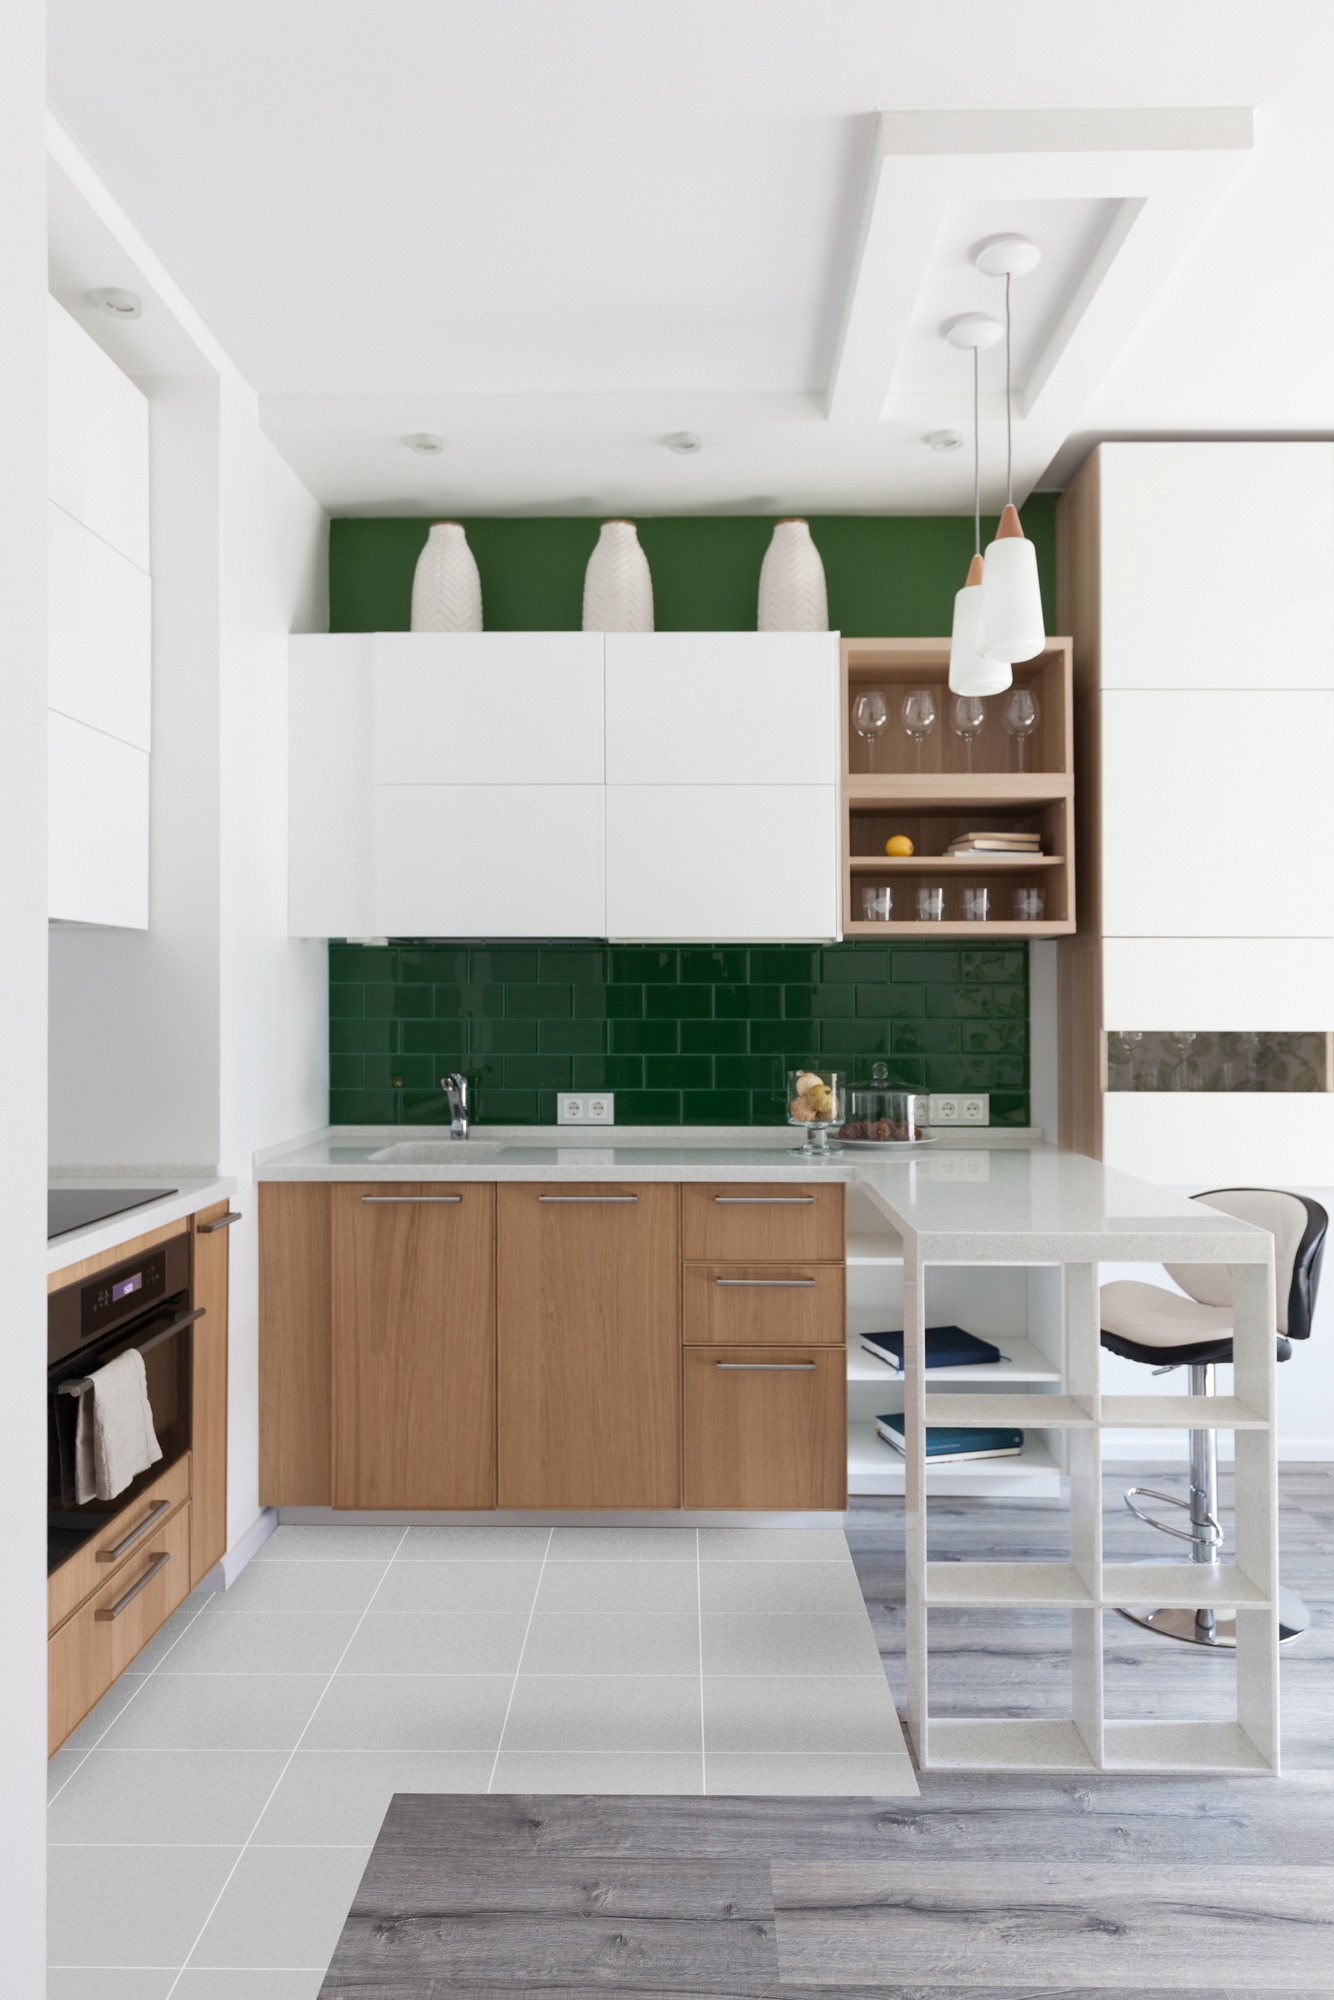 Dự án của nhà thiết kế Yulia Belyaeva với gam màu trắng kết hợp nội thất gỗ ấm áp cho không gian nhỏ rộng rãi hơn. Bên cạnh đó, những viên gạch thẻ metro màu xanh ngọc lục bảo giúp cho phòng bếp tối giản bớt đi sự nhàm chán, trái lại rất tươi mới.